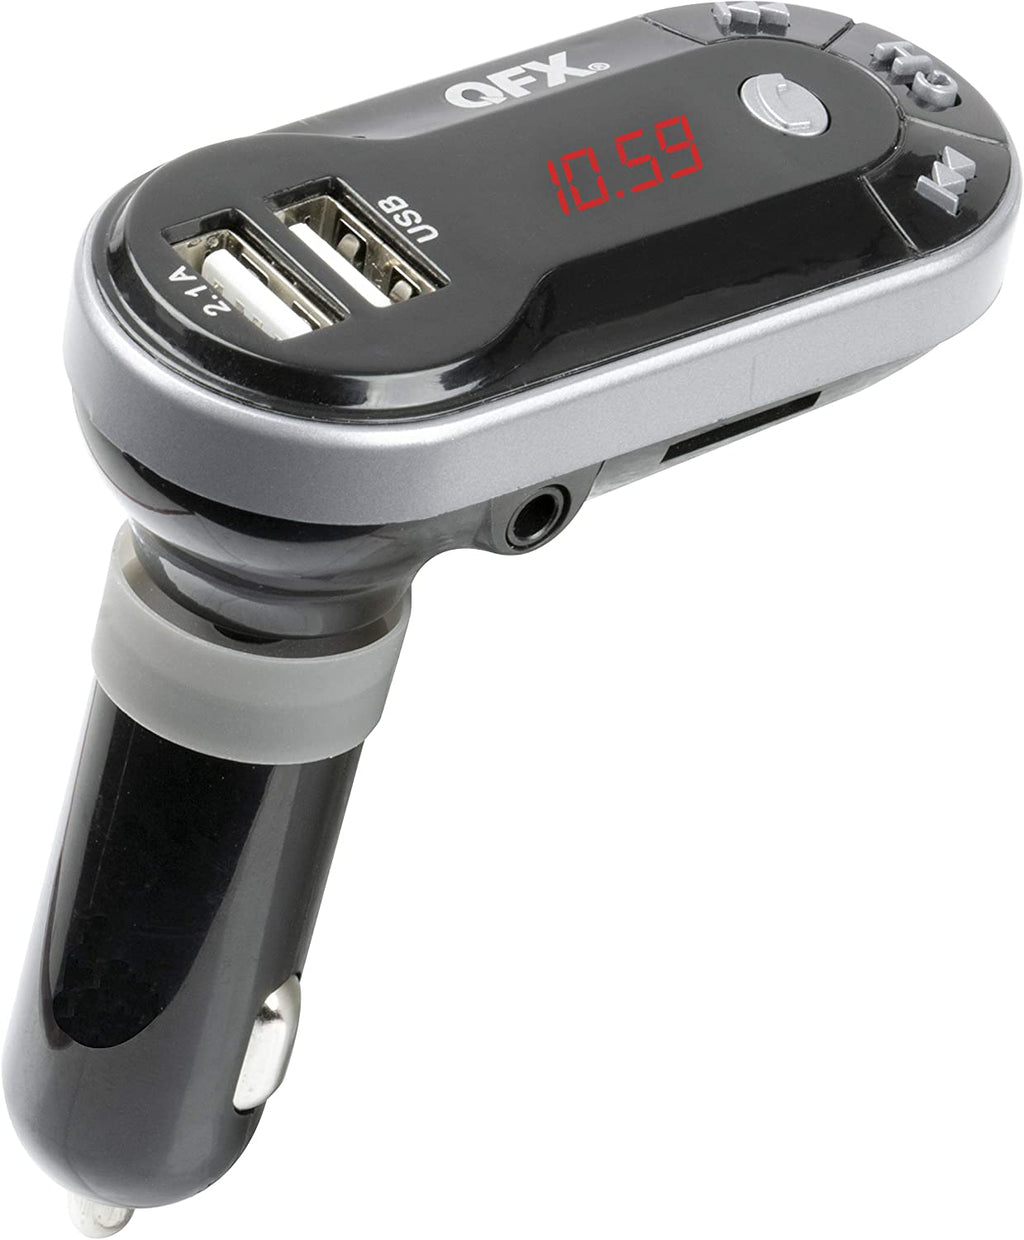 FM transmitter for car + USB + slot for SD Card